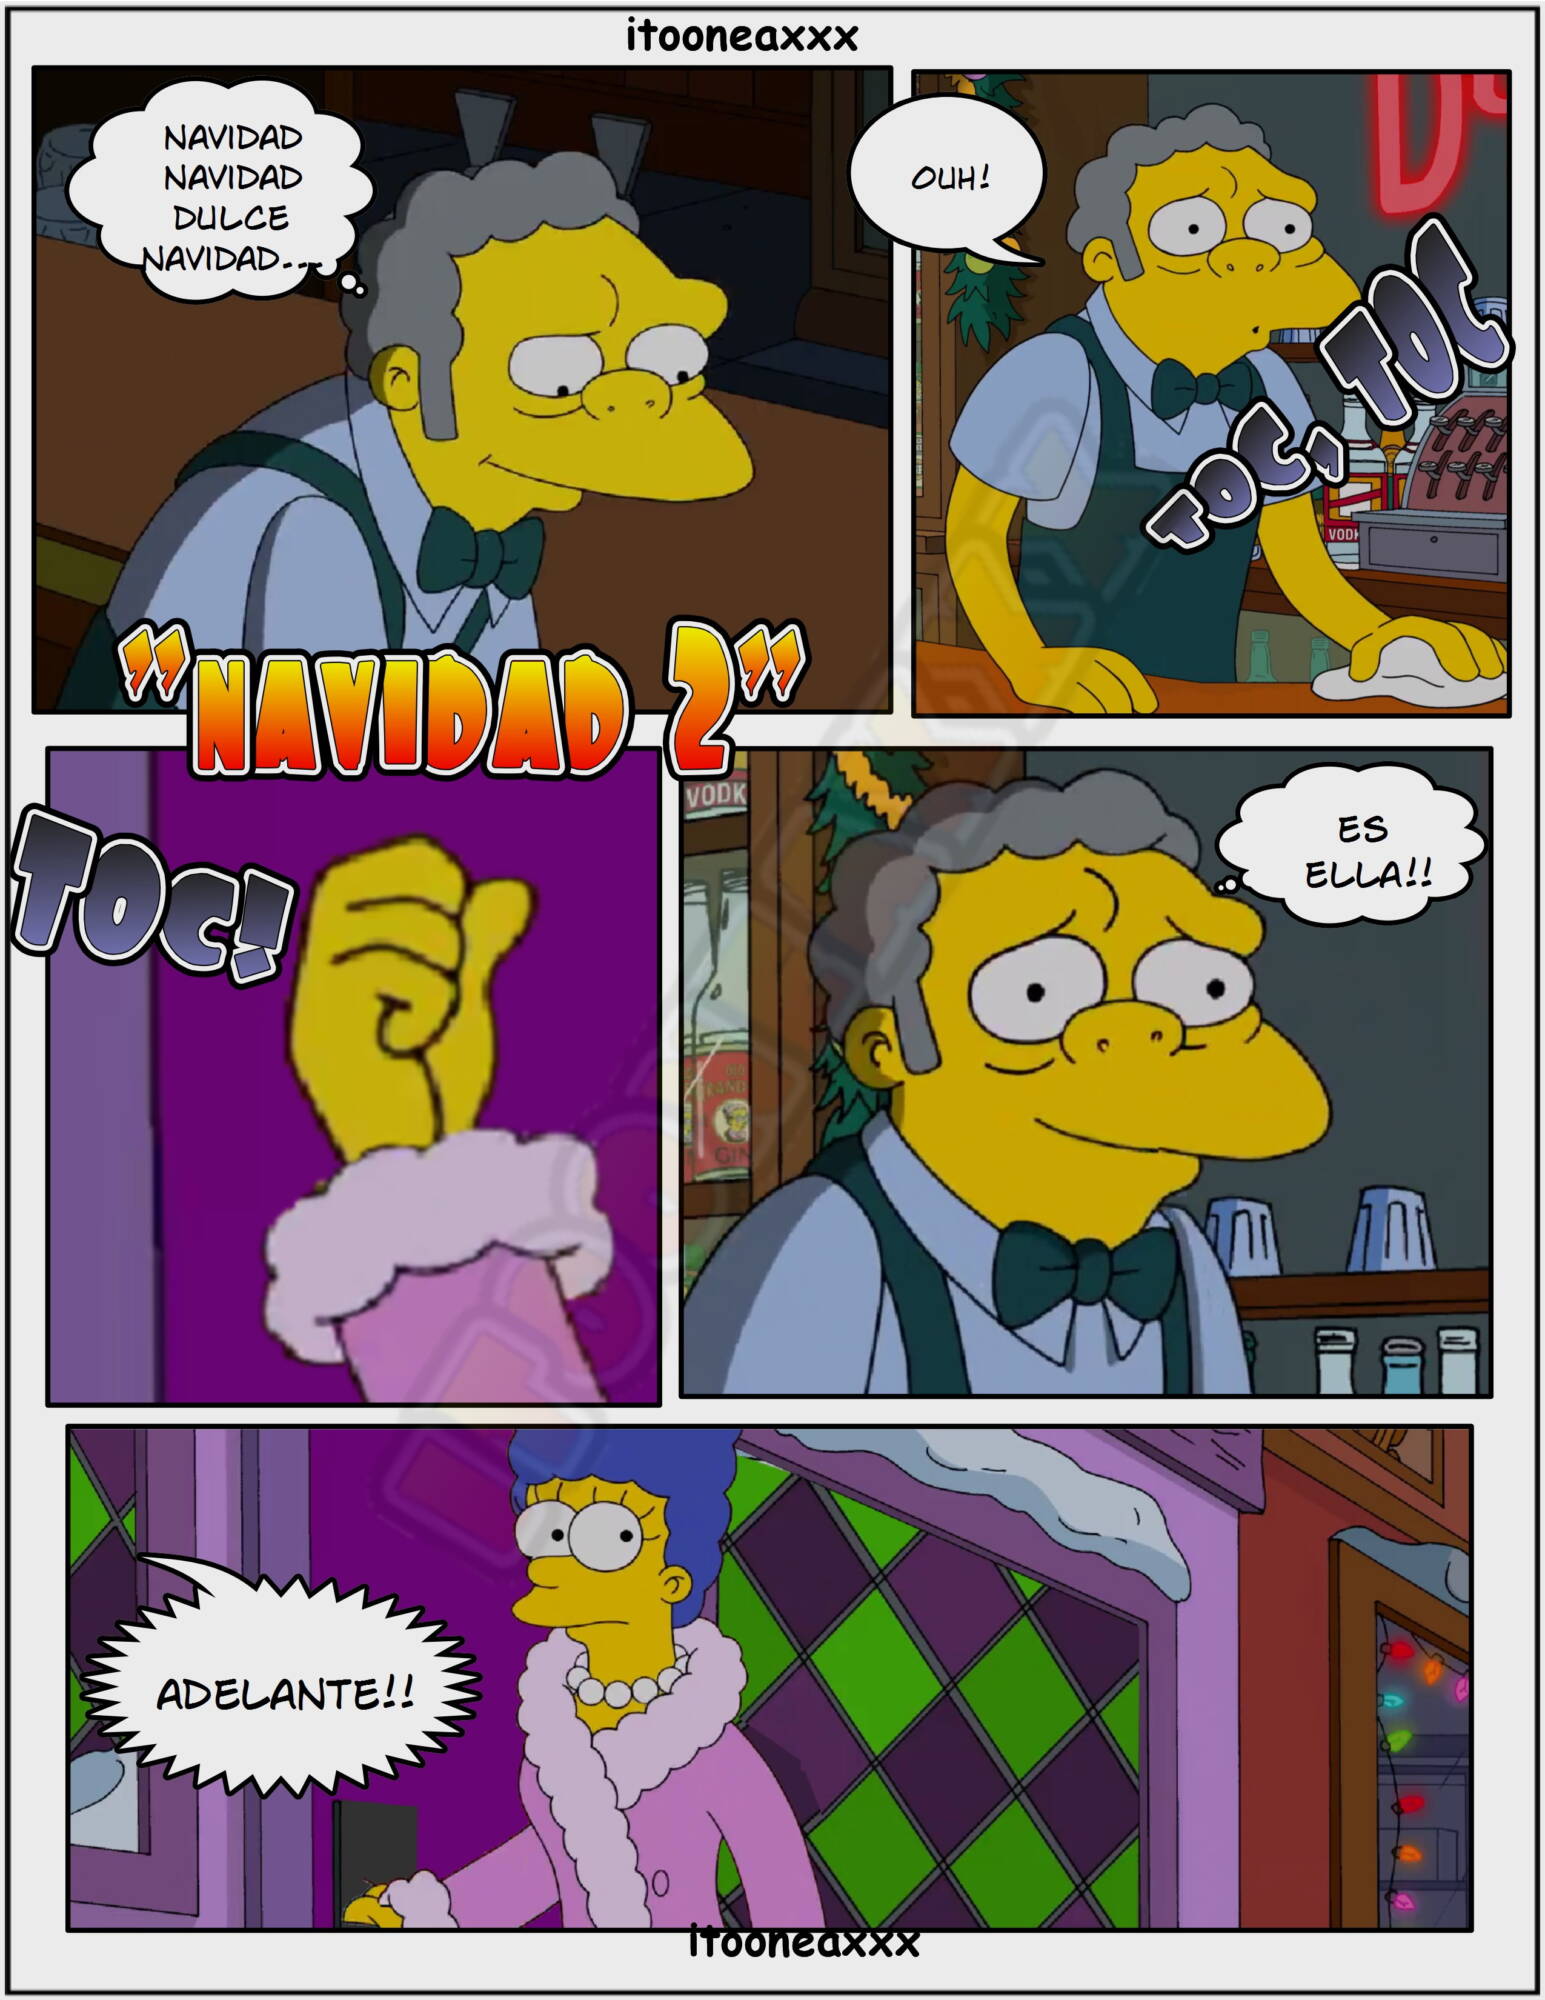 1545px x 2000px - Simpsons Comics [IToonEAXXX] - 5.2 [Spanish] Sexy Christmas 2 - AllPornComic